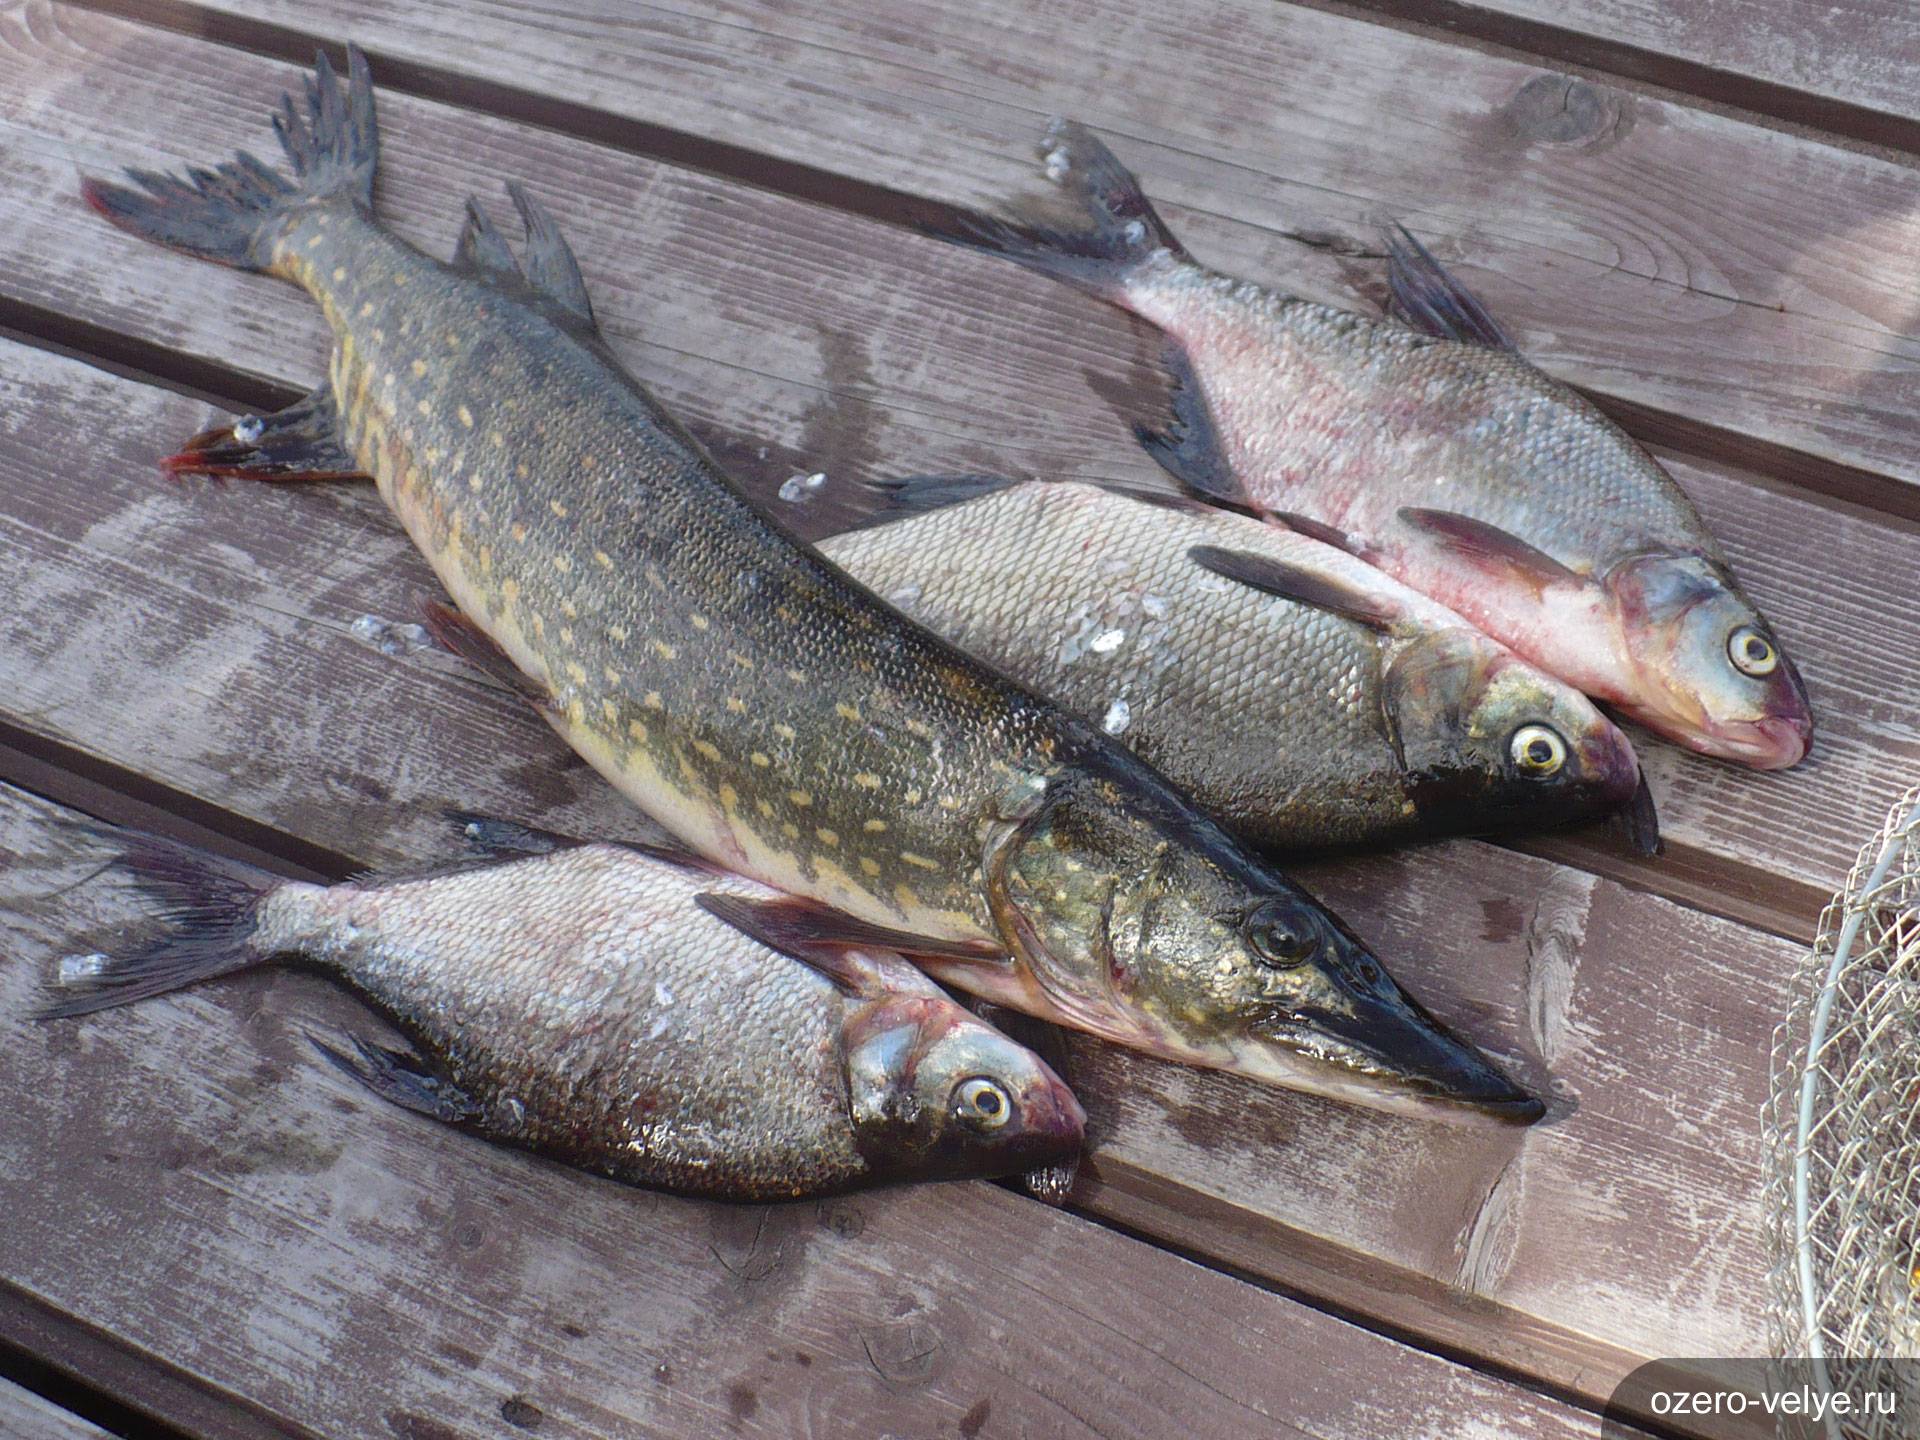 Рыбы, обитающие в озере борое : — эко валдай клуб